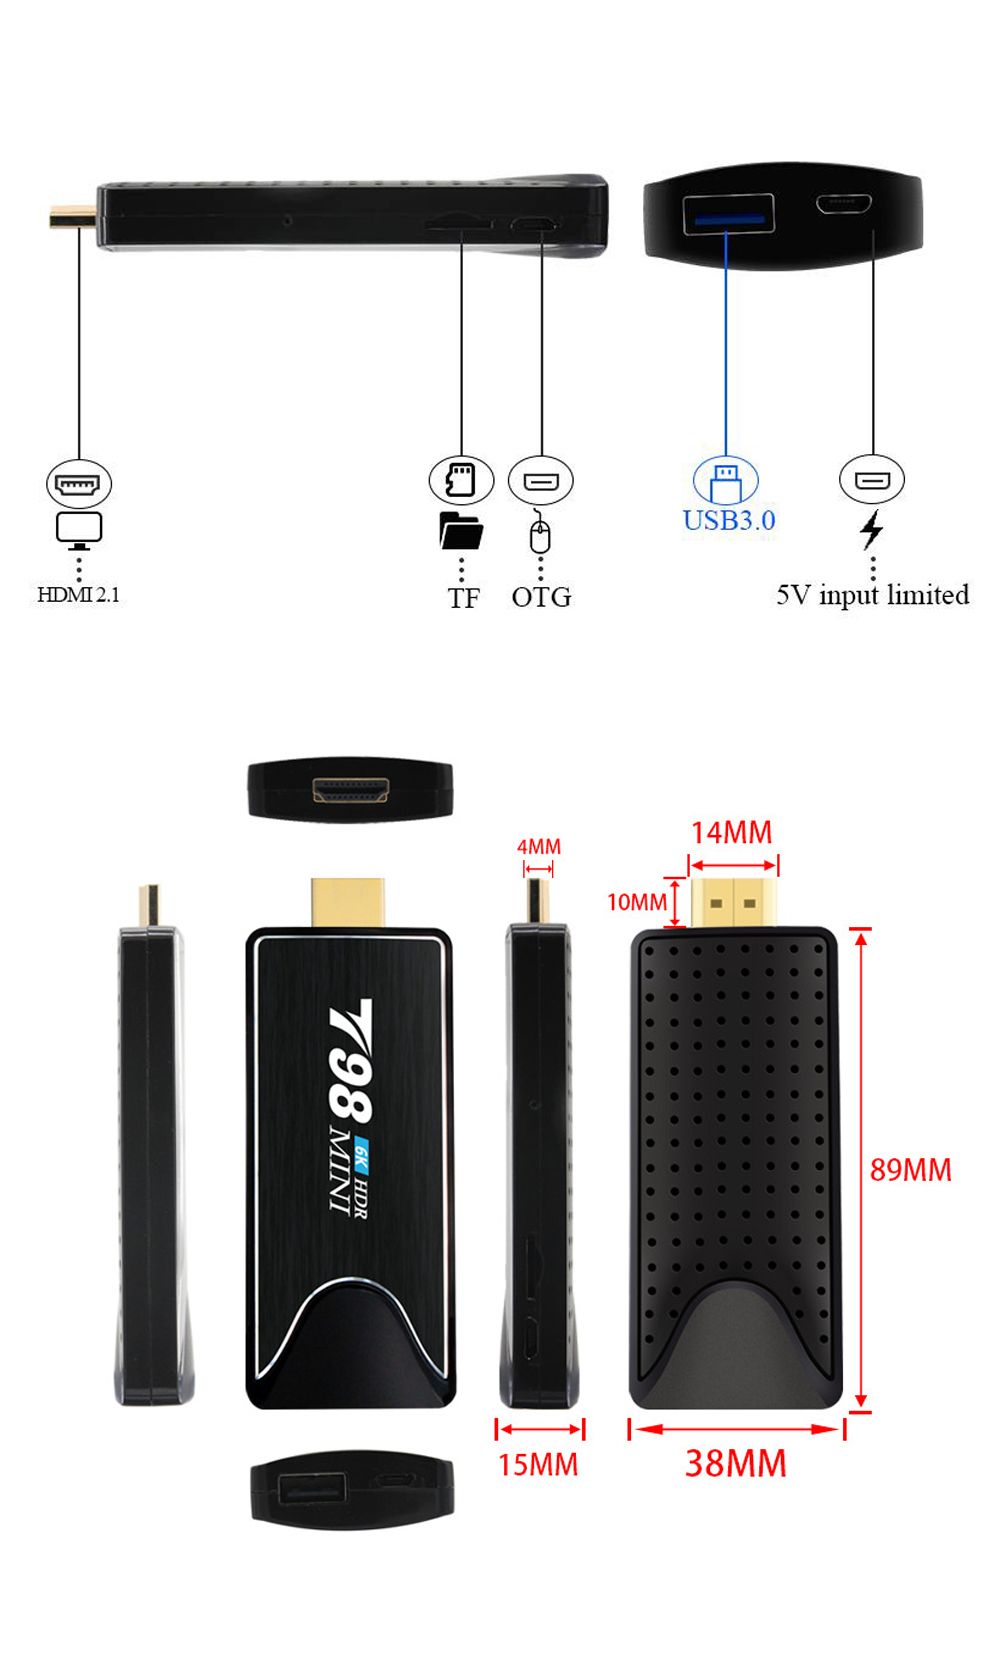 T98-Mini-Allwinner-H6-2GB-RAM-8GB-ROM-24G-WiFi-bluetooth-40-Android-90-4K-6K-H265-HDR-Smart-TV-Stick-1654216